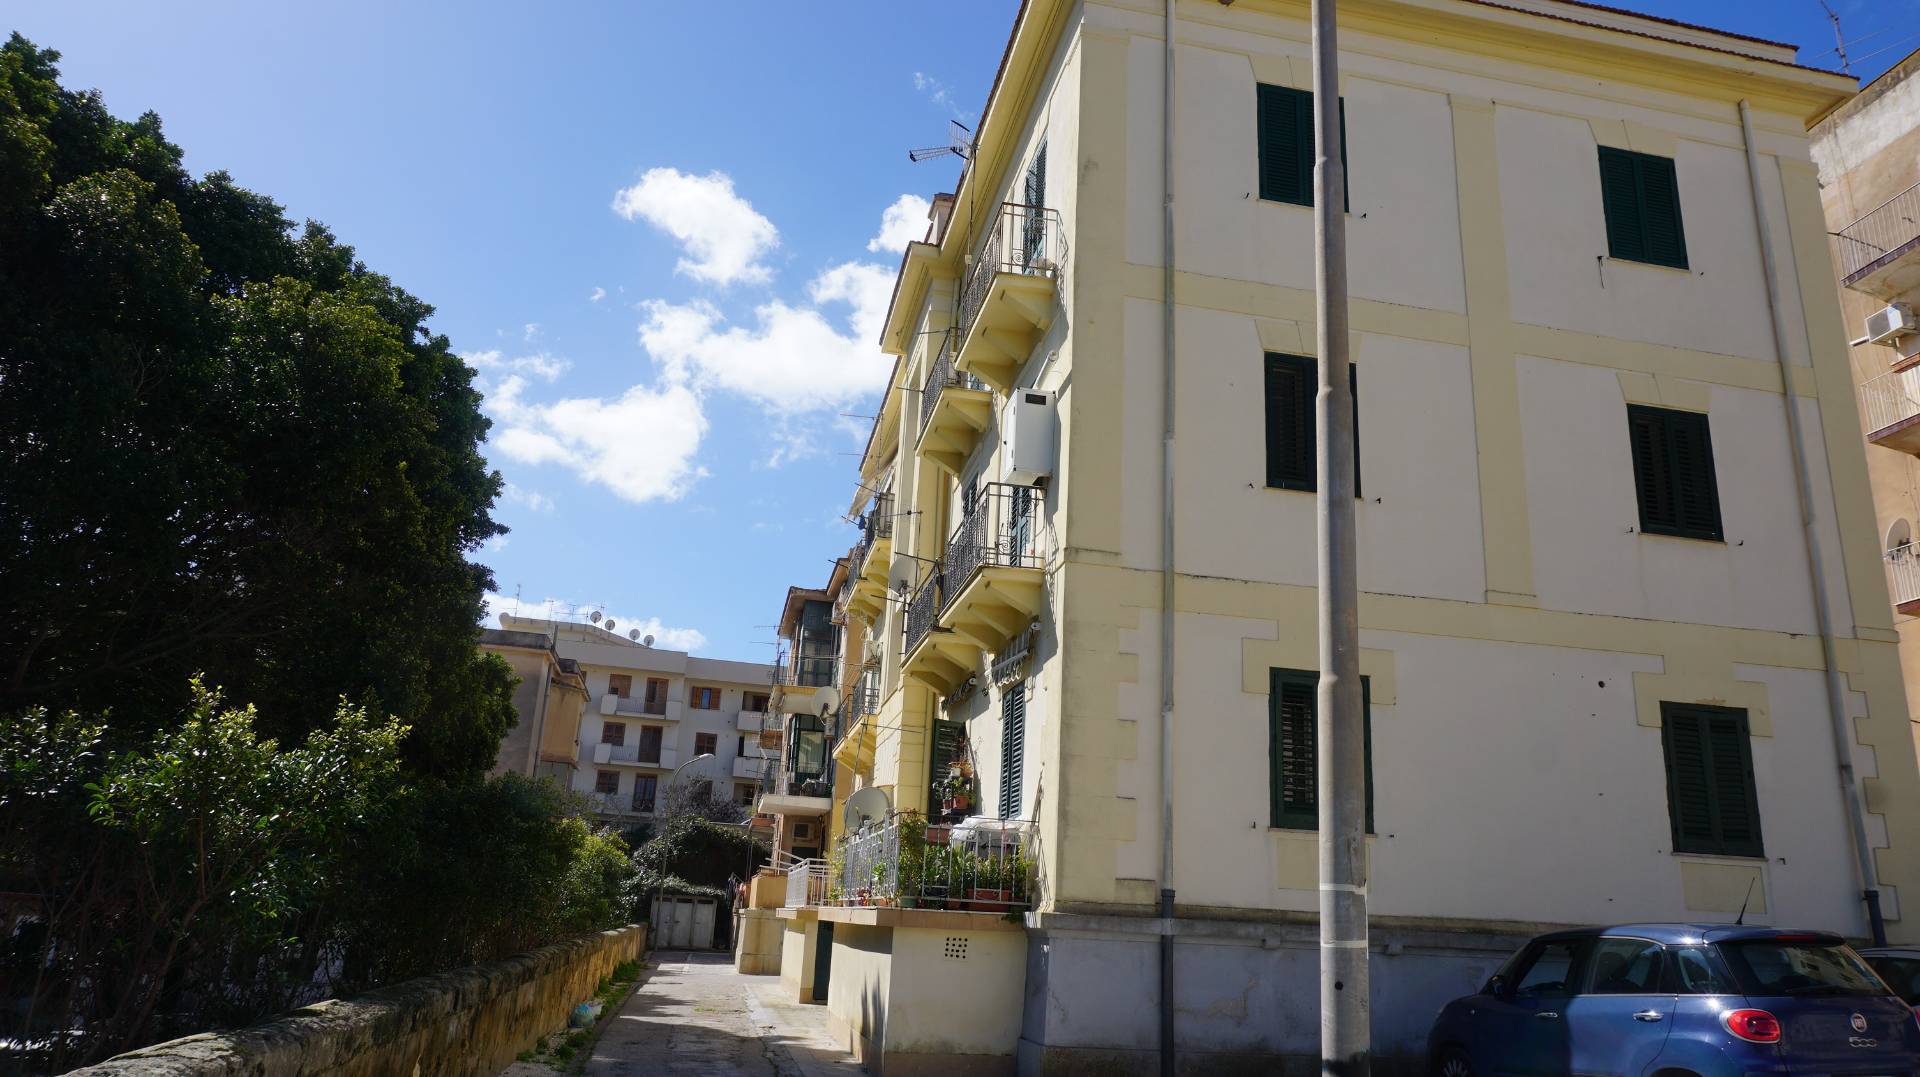 Appartamento in vendita a Castelvetrano, 5 locali, zona Località: CentroStorico, prezzo € 35.000 | PortaleAgenzieImmobiliari.it